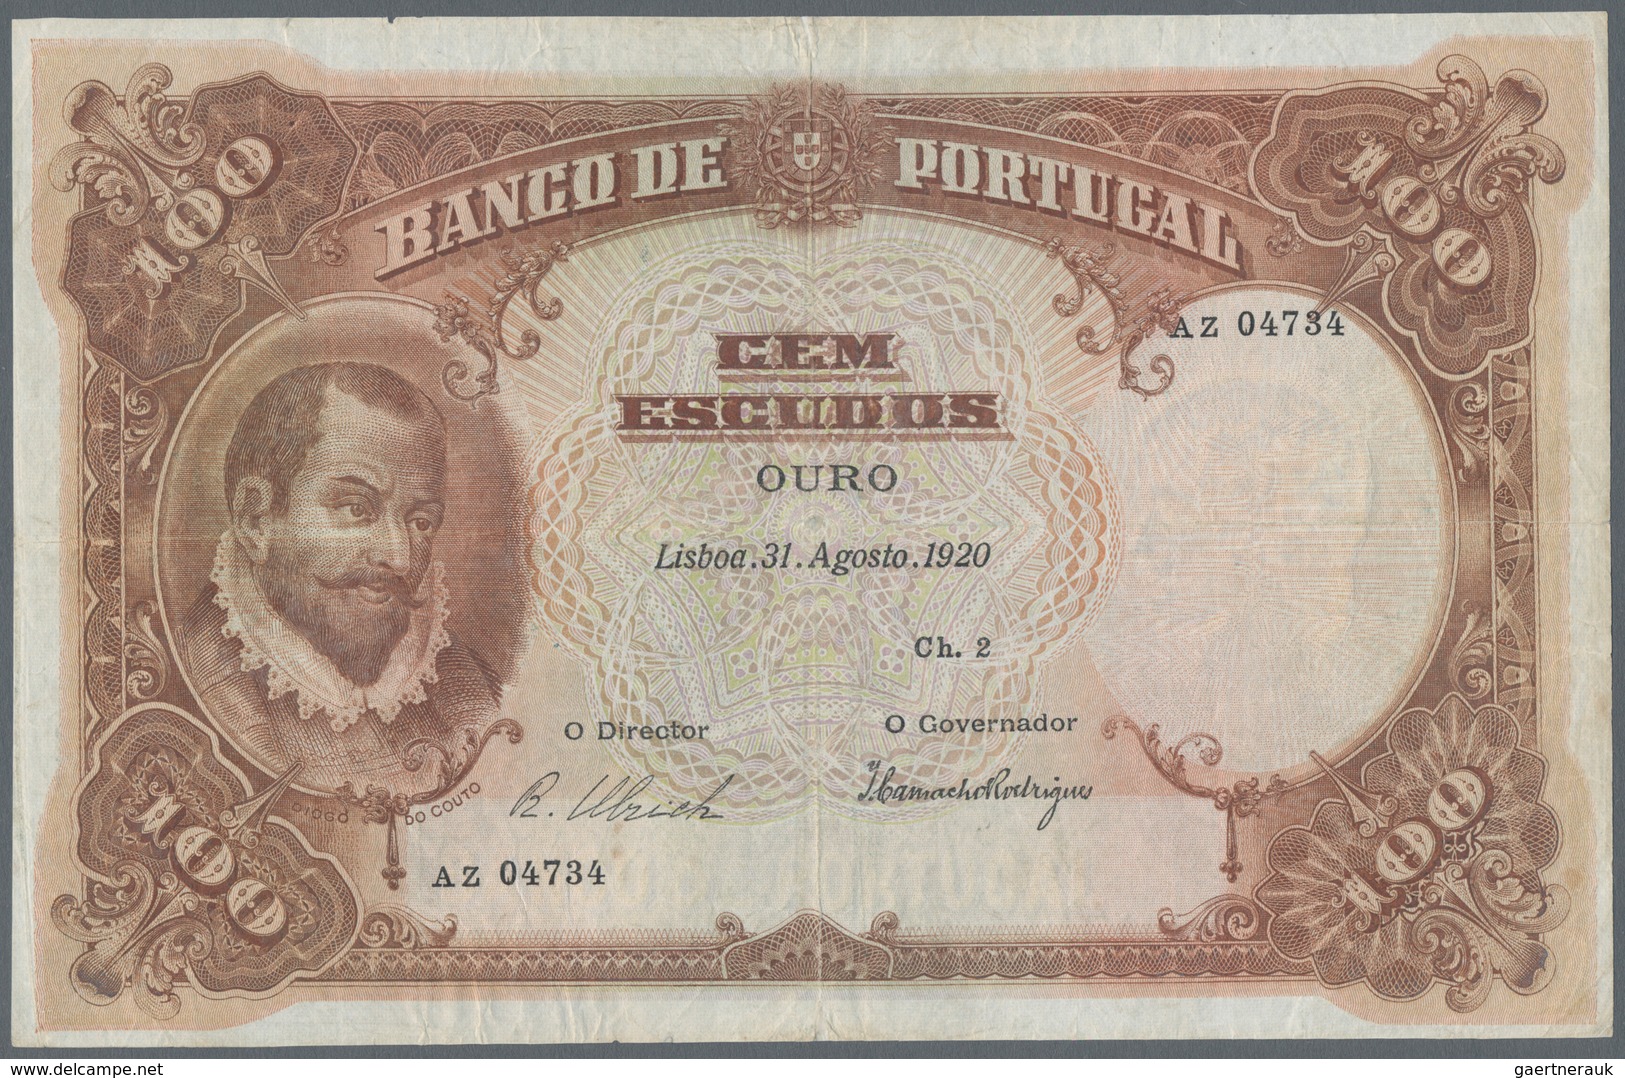 Portugal: Banco De Portugal 100 Escudos 1920, P.124, Very Attractive And Extraordinary Rare Banknote - Portugal